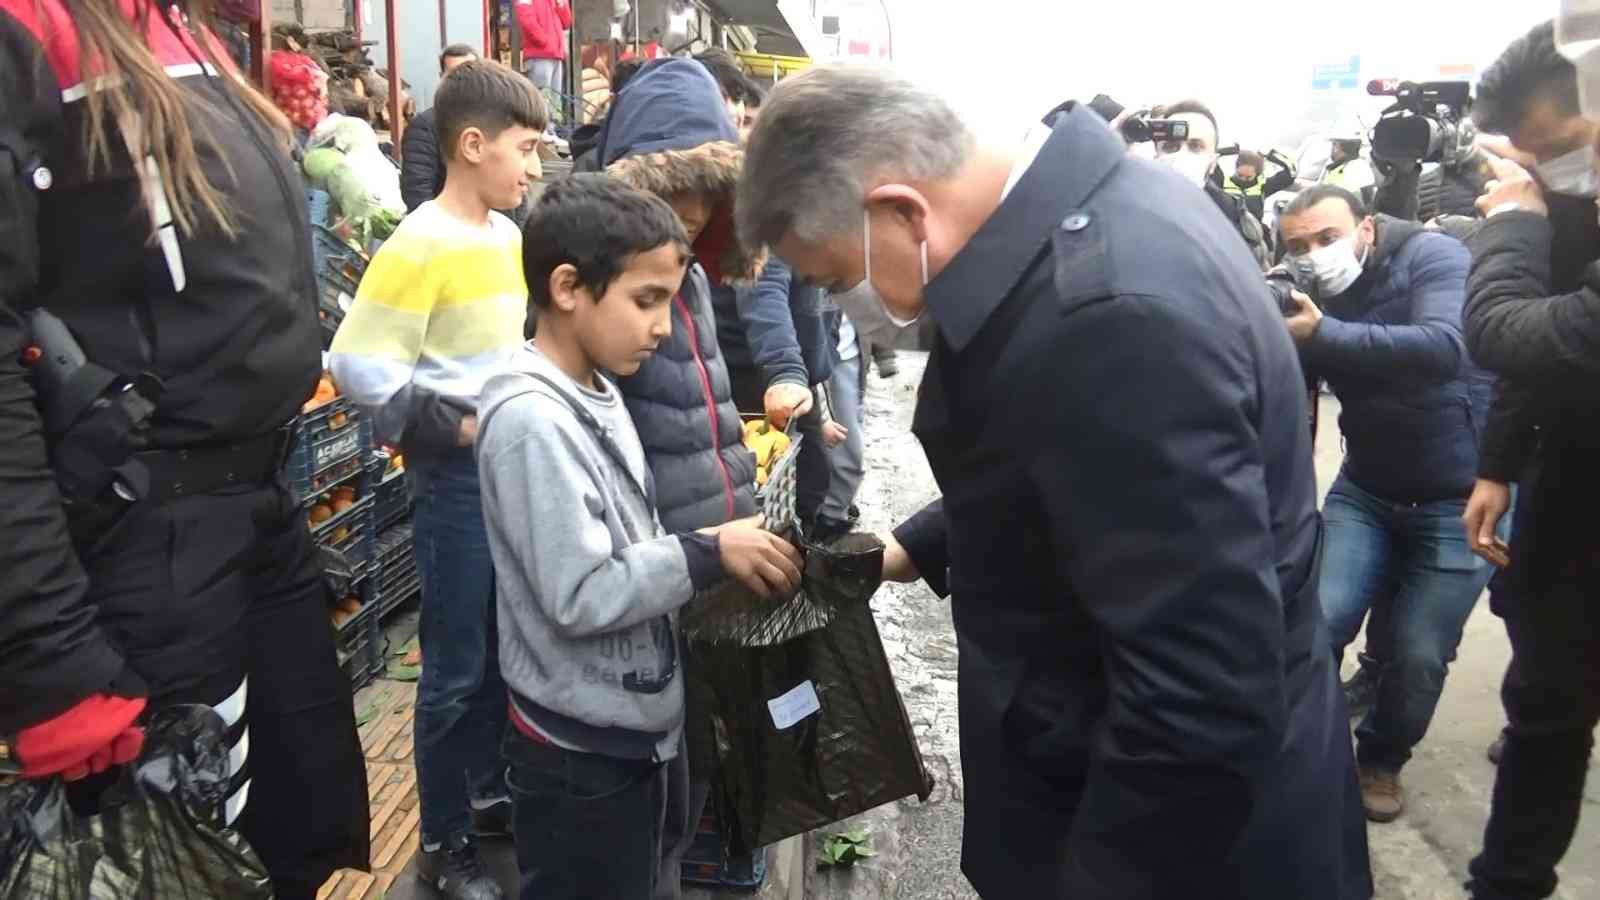 Taş atan çocuklara dokunularak topluma kazandırılıyor #diyarbakir